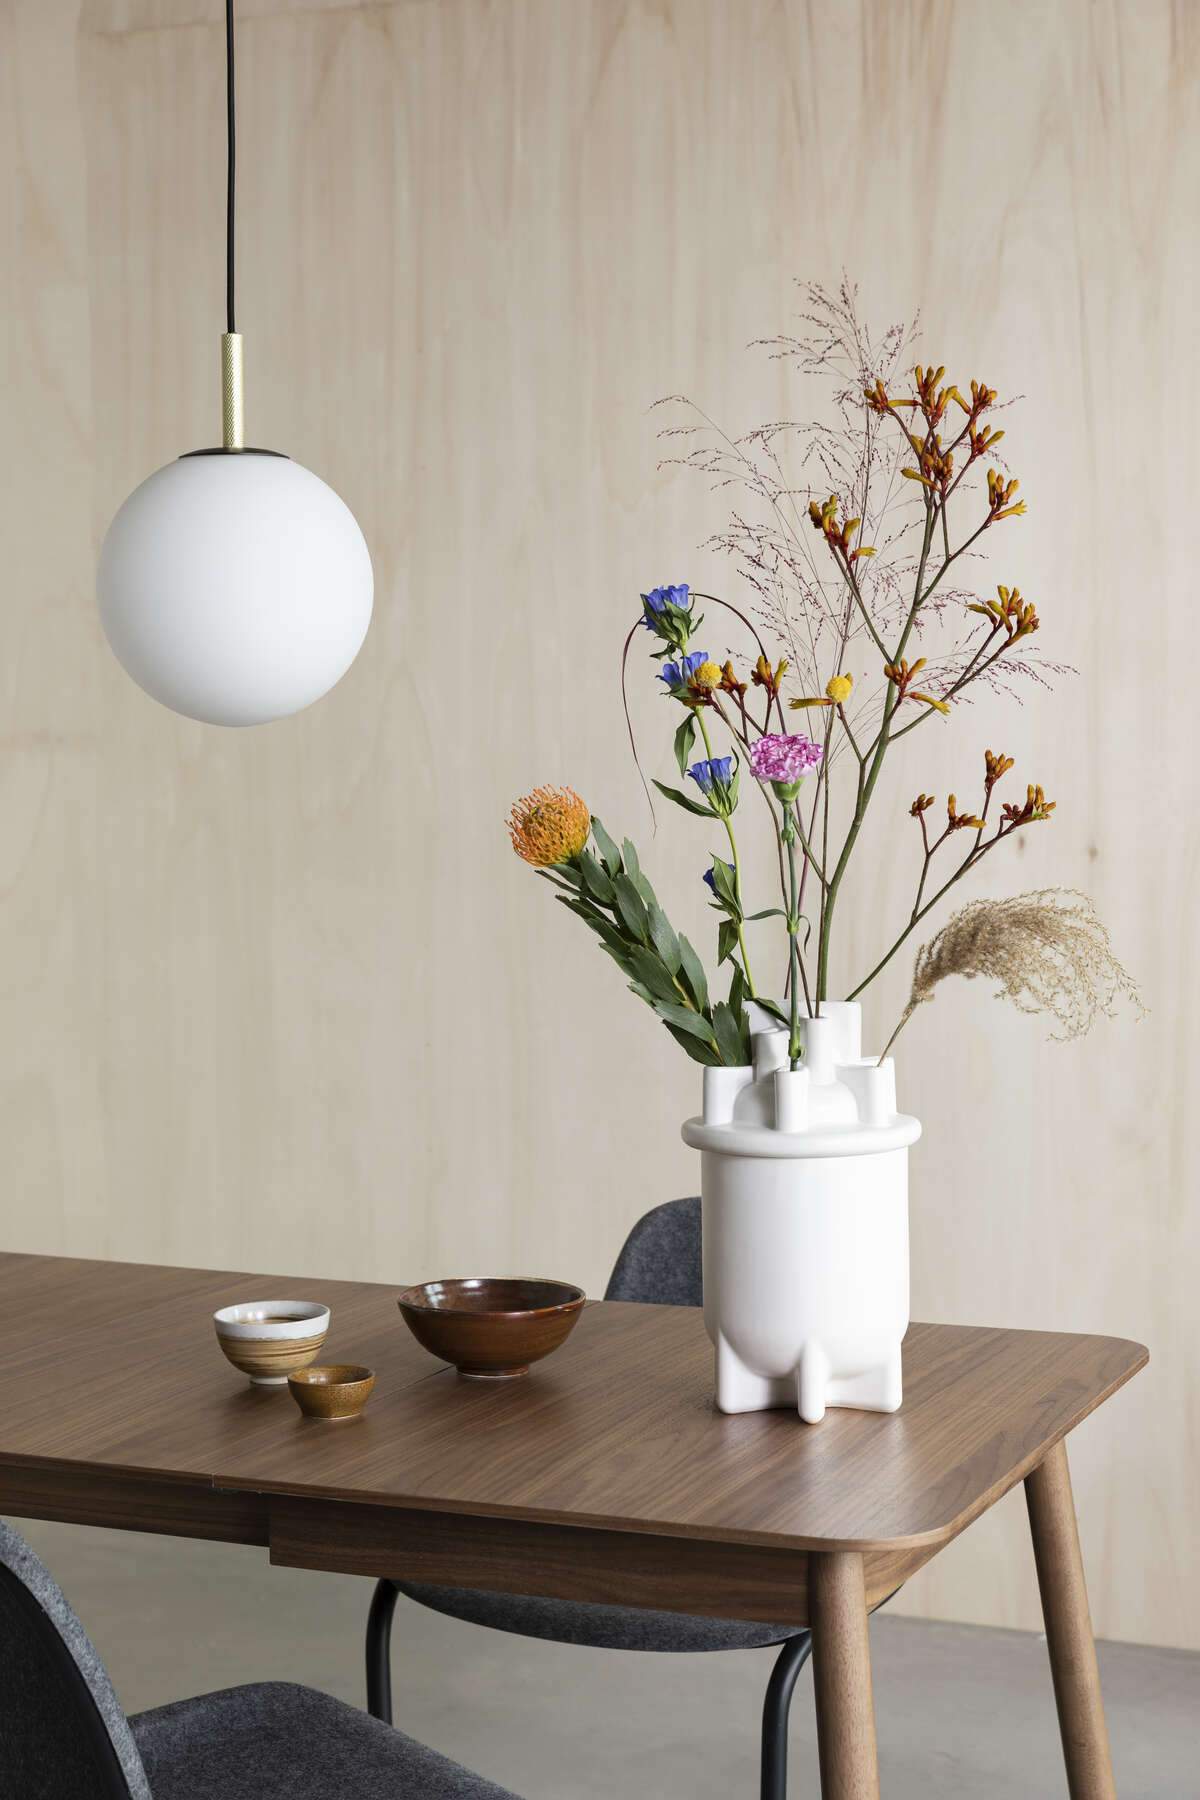 BASSIN M vase white, Zuiver, Eye on Design